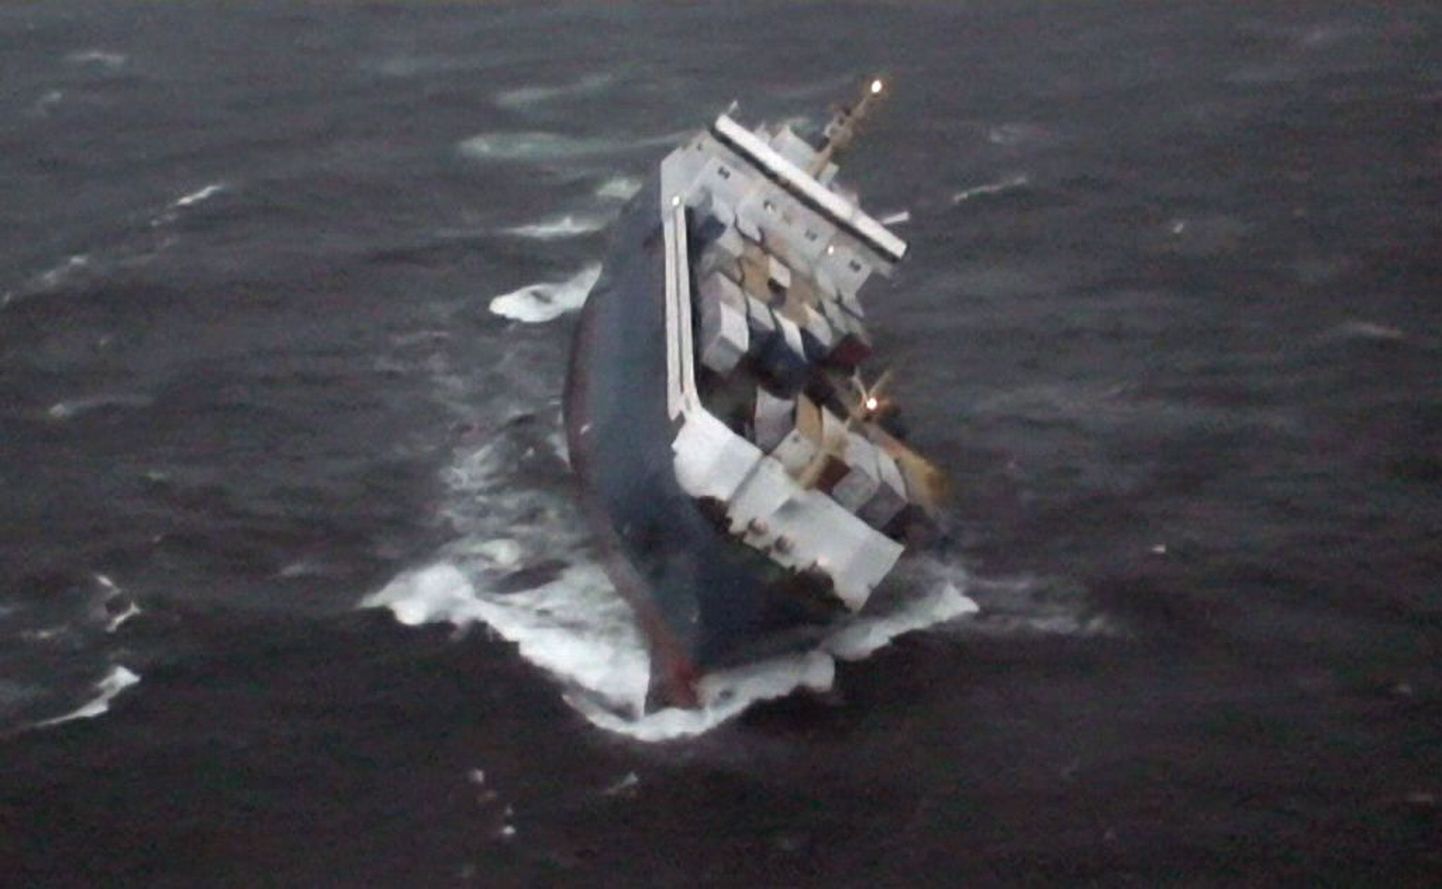 Rootsi kaubalaev Finnbirch uppus 2006. aastal novembritormis Gotlandi ja Ölandi saarte vahel.